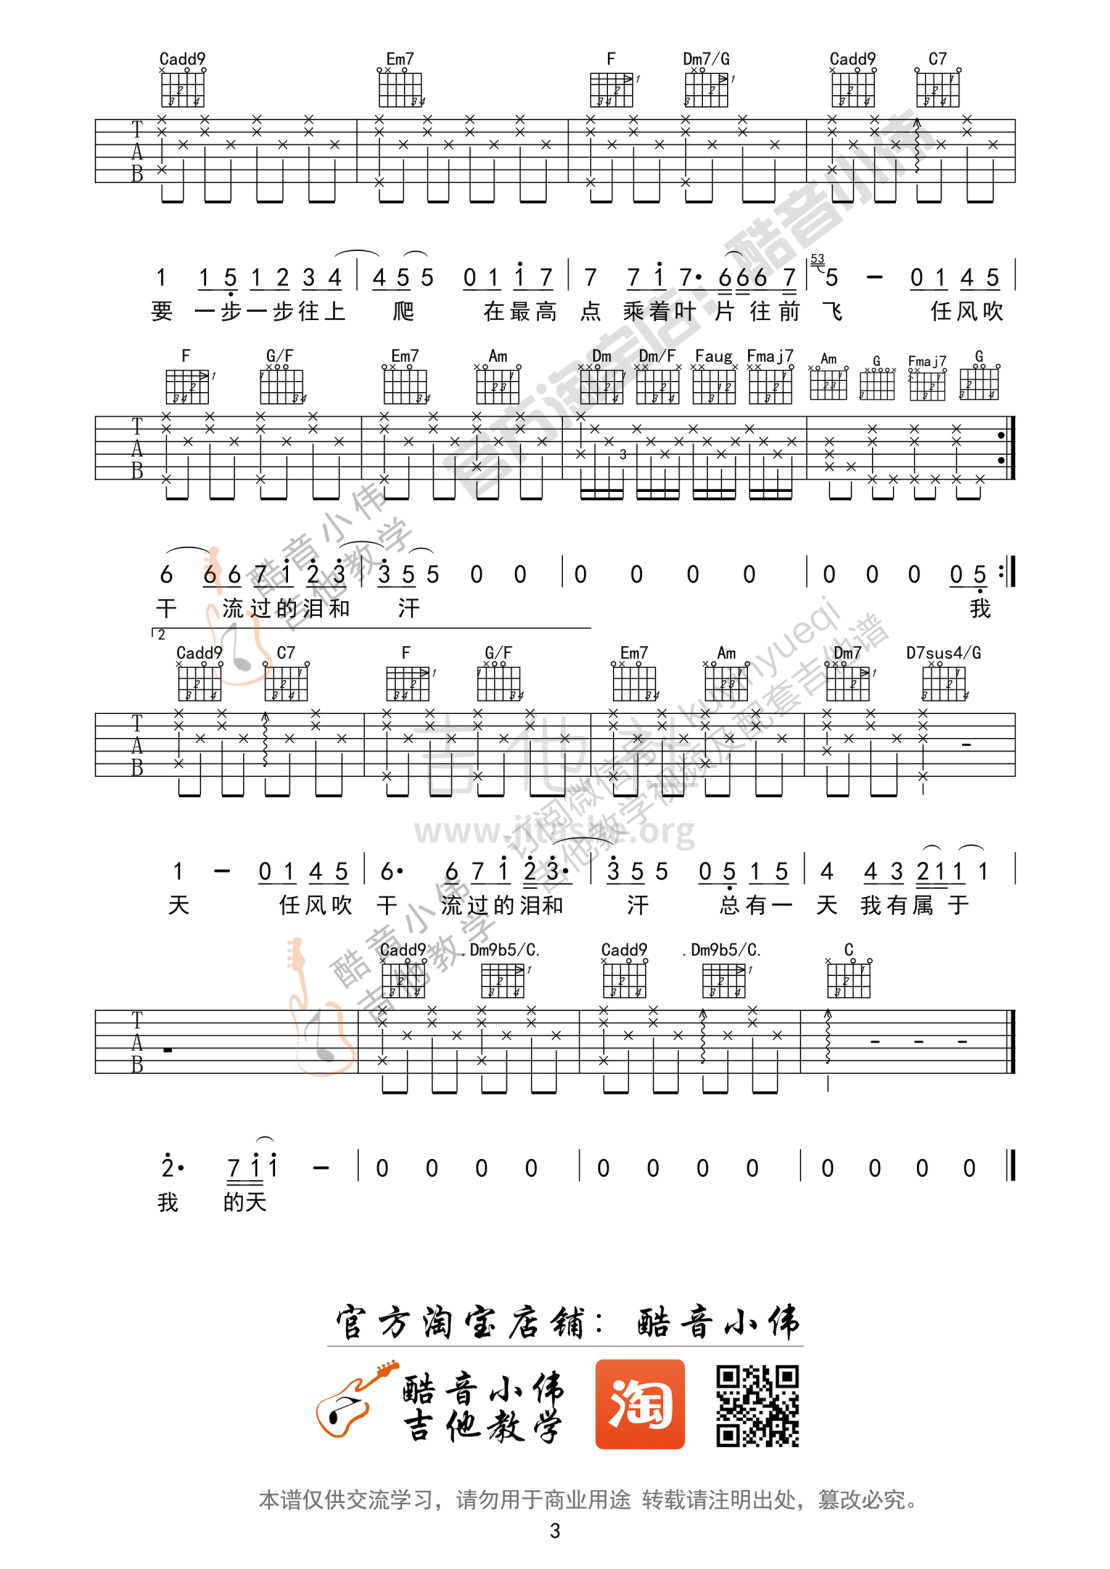 打印:蜗牛(C调中级篇吉他谱 酷音小伟吉他教学)吉他谱_周杰伦(Jay Chou)_蜗牛吉他谱03.jpg